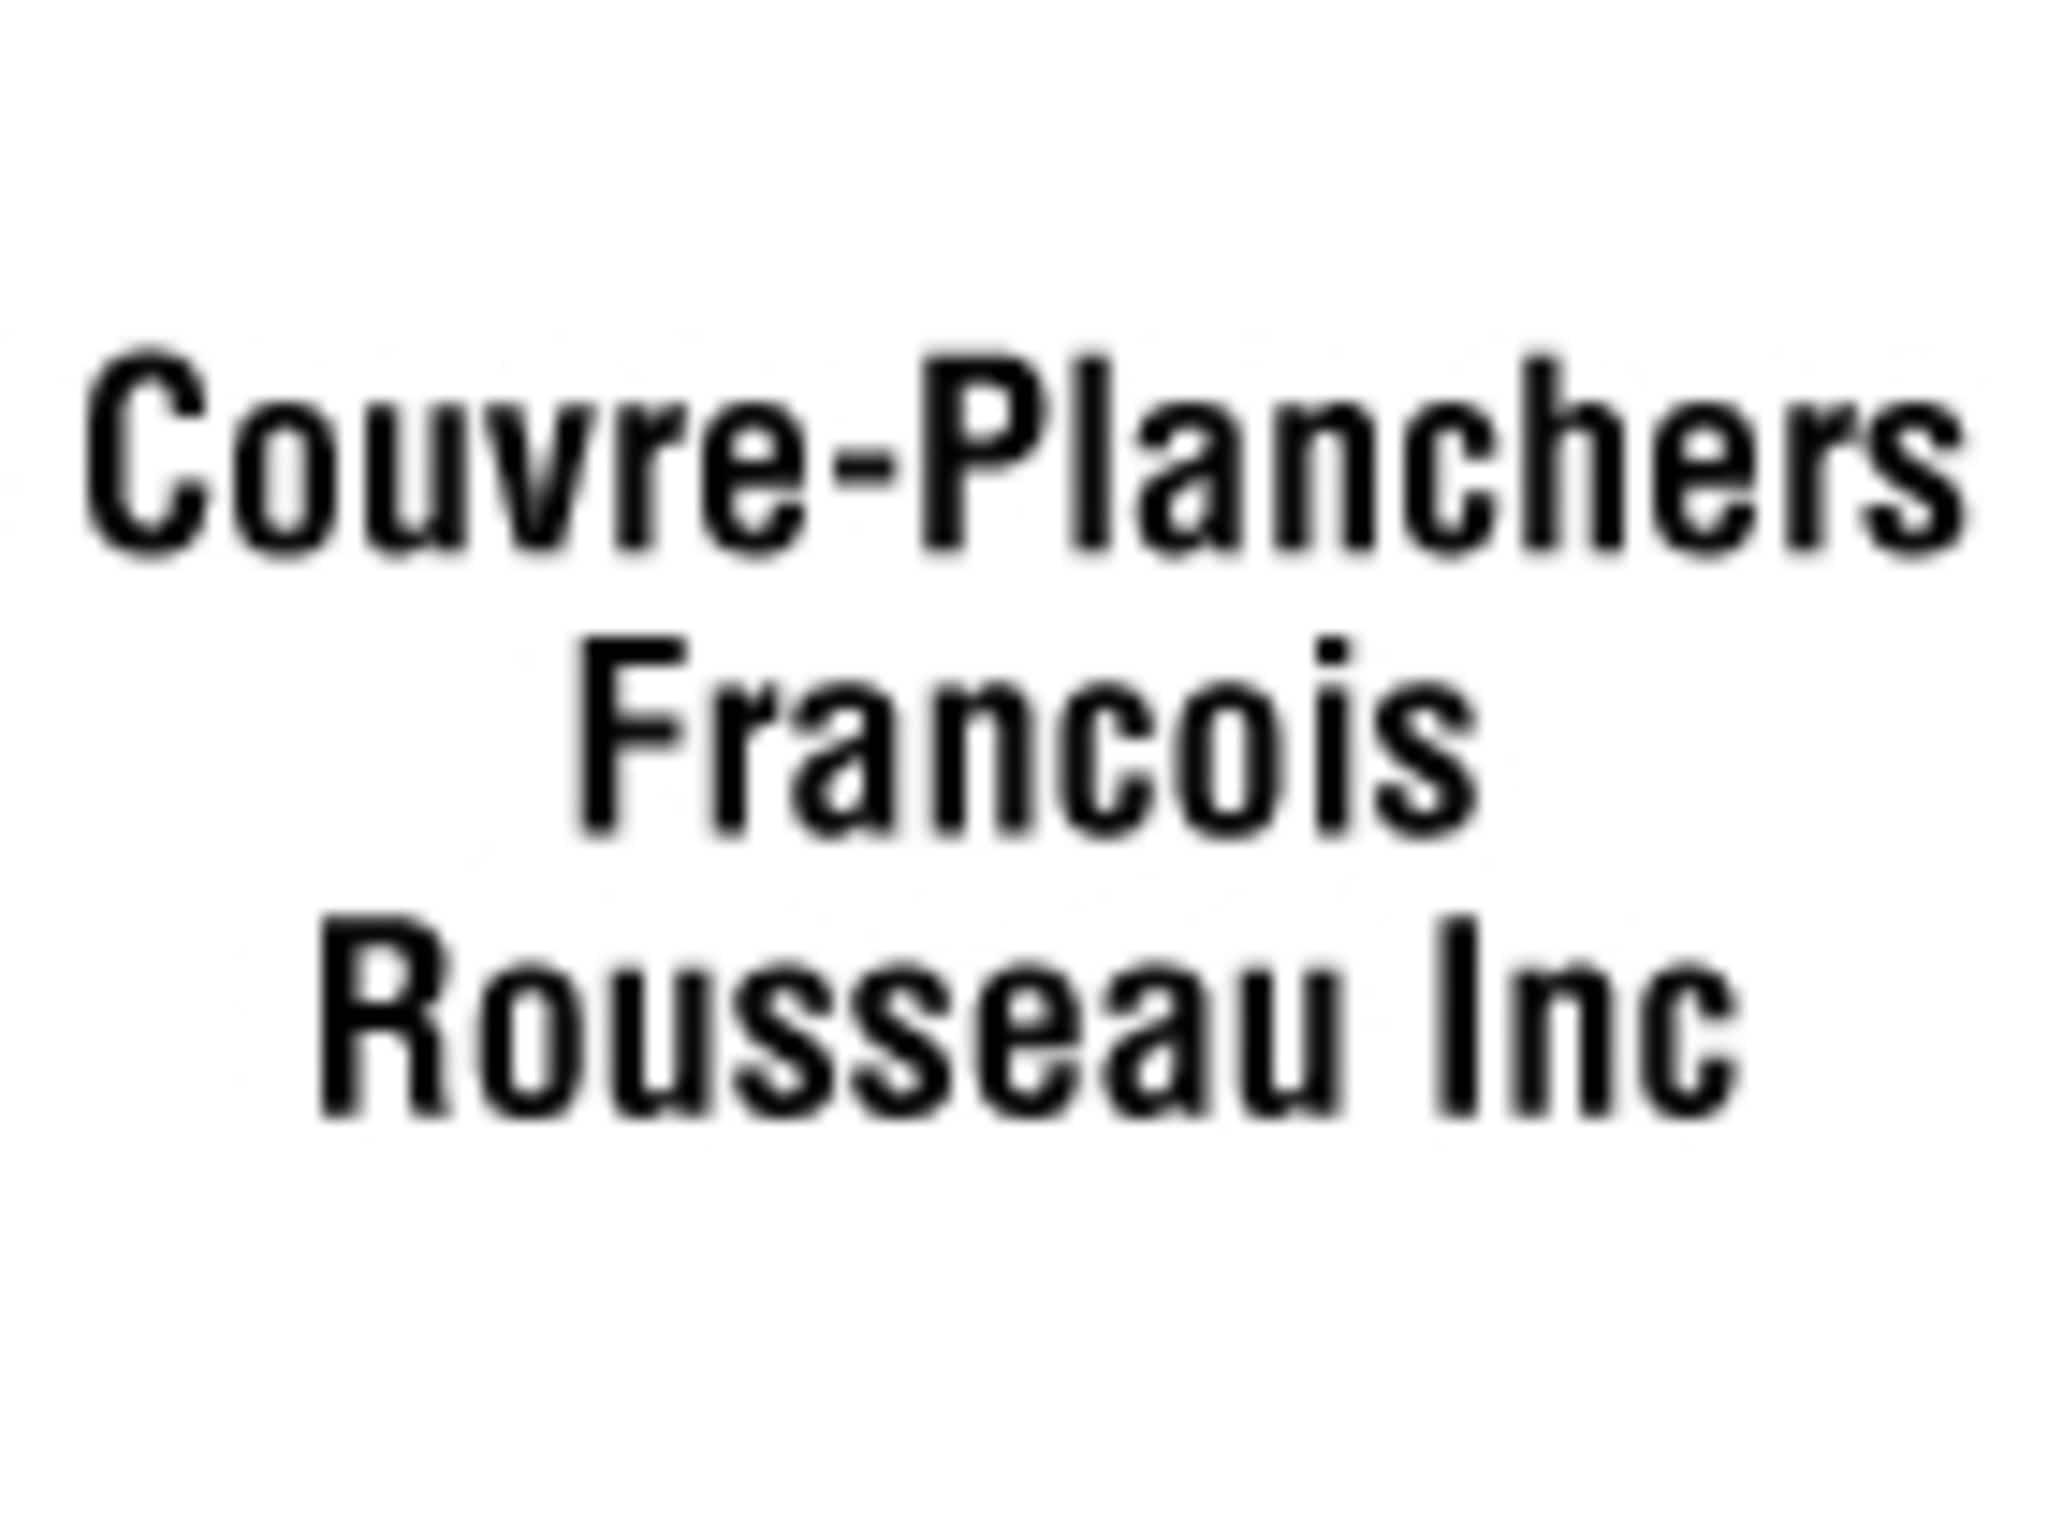 photo Couvre-Planchers François Rousseau Inc